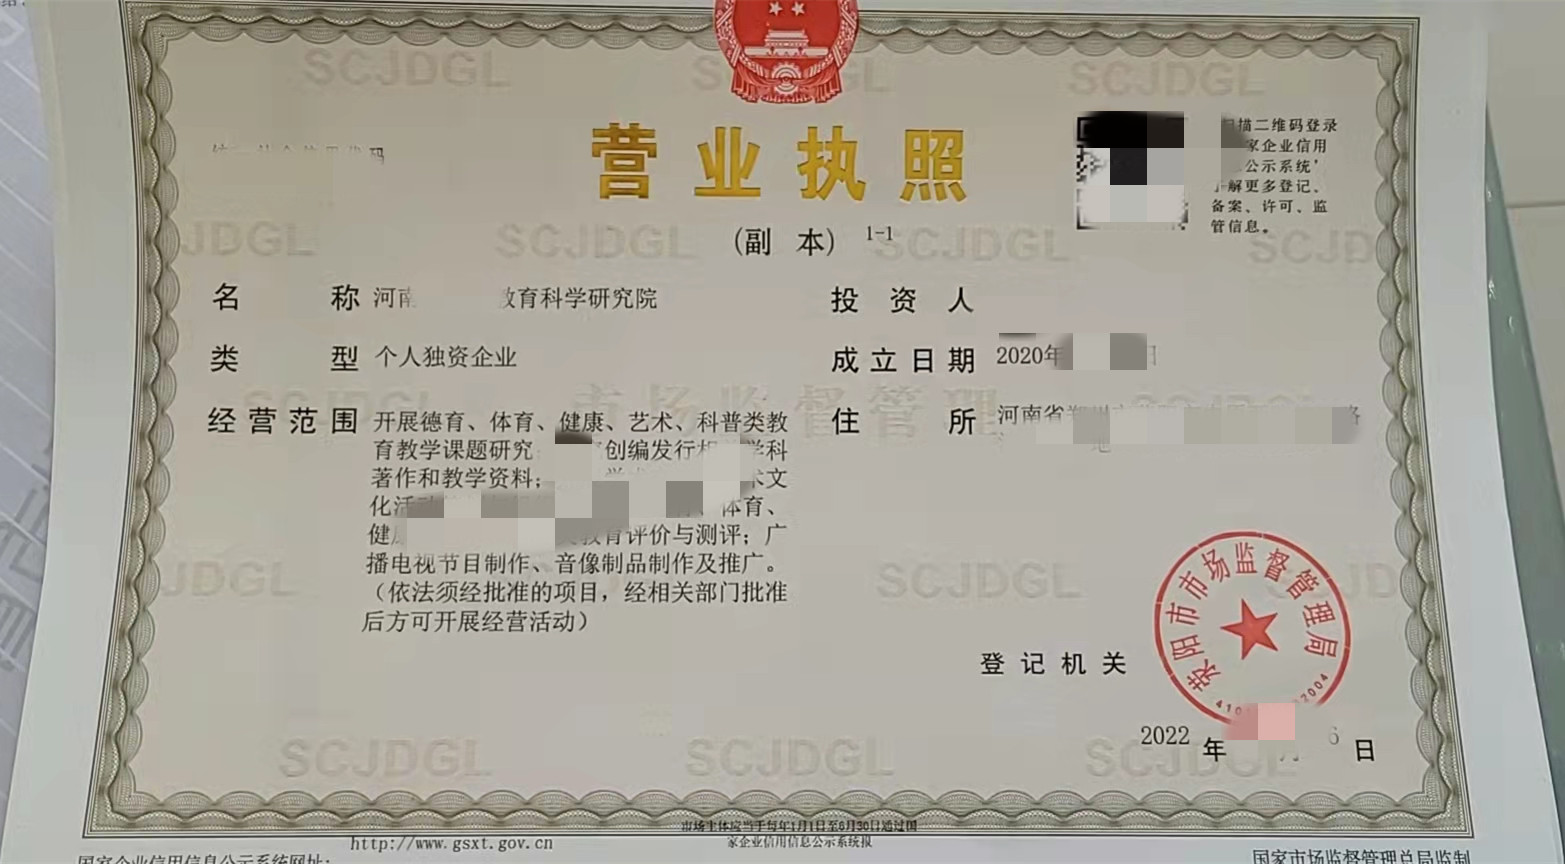 郑州快速注册行业研究院营业执照